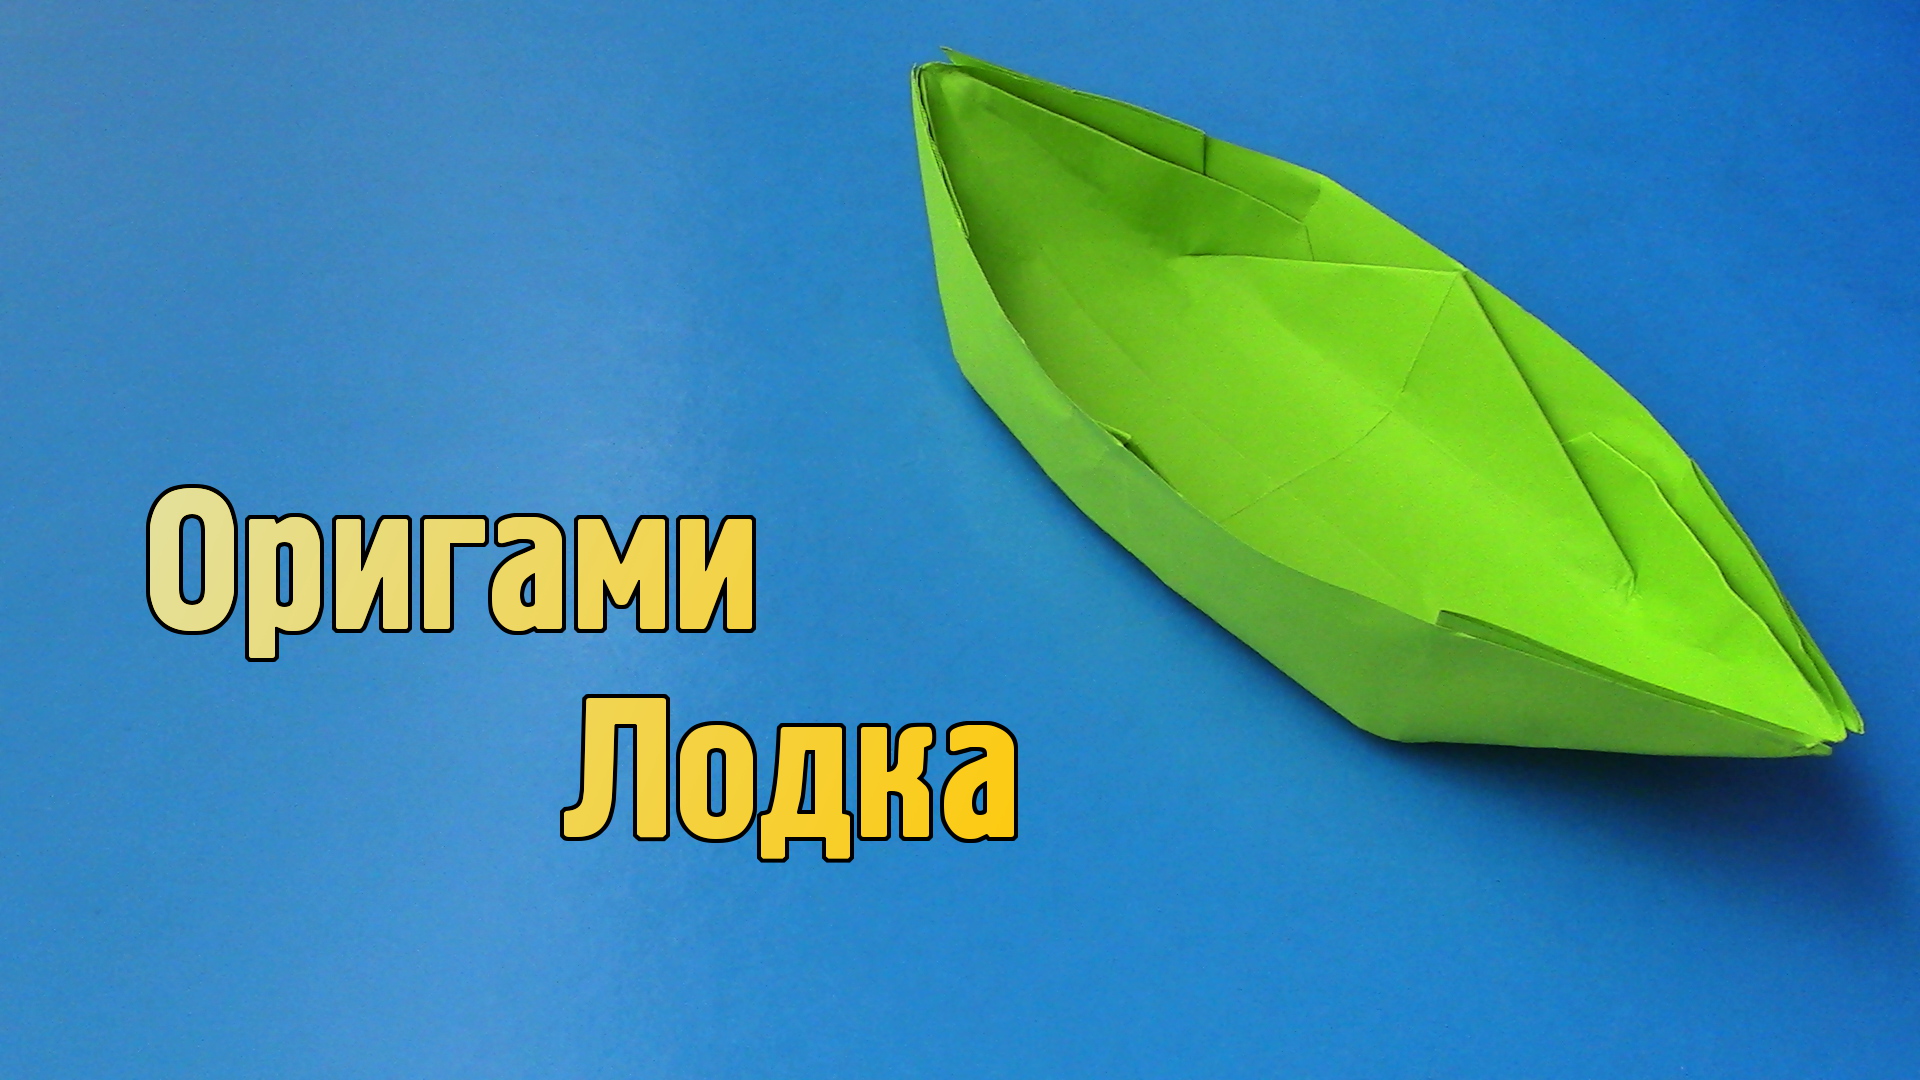 Как сделать Лодку из бумаги | Оригами Лодка своими руками без клея | Бумажная Лодочка для детей